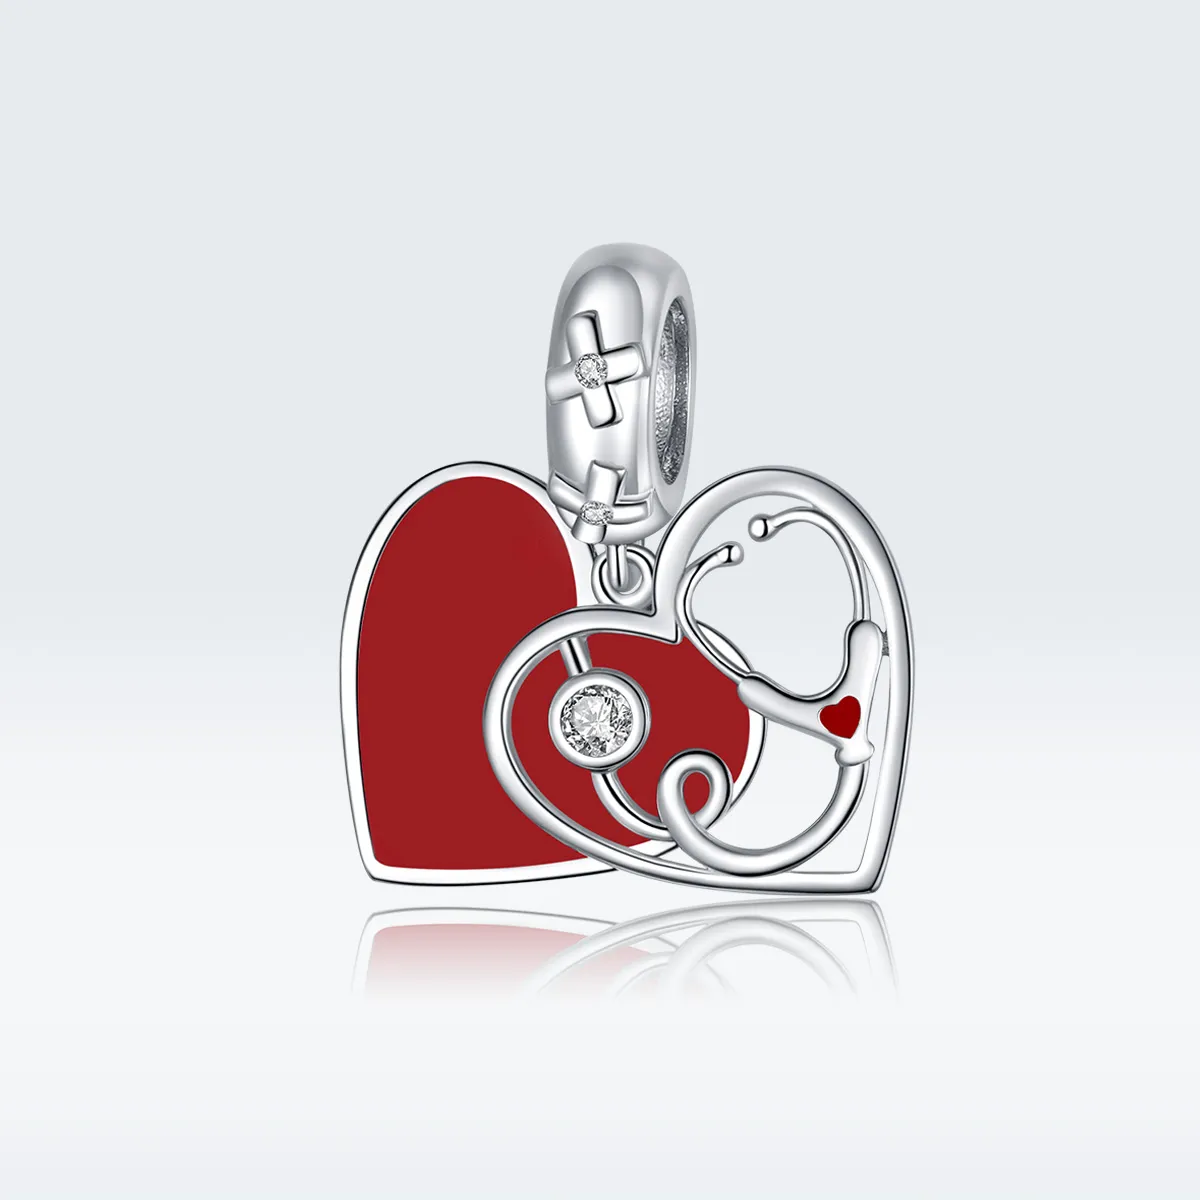 Talisman pandantiv Tip Pandora cu Stetoscop cu inimă roșie din argint - BSC308